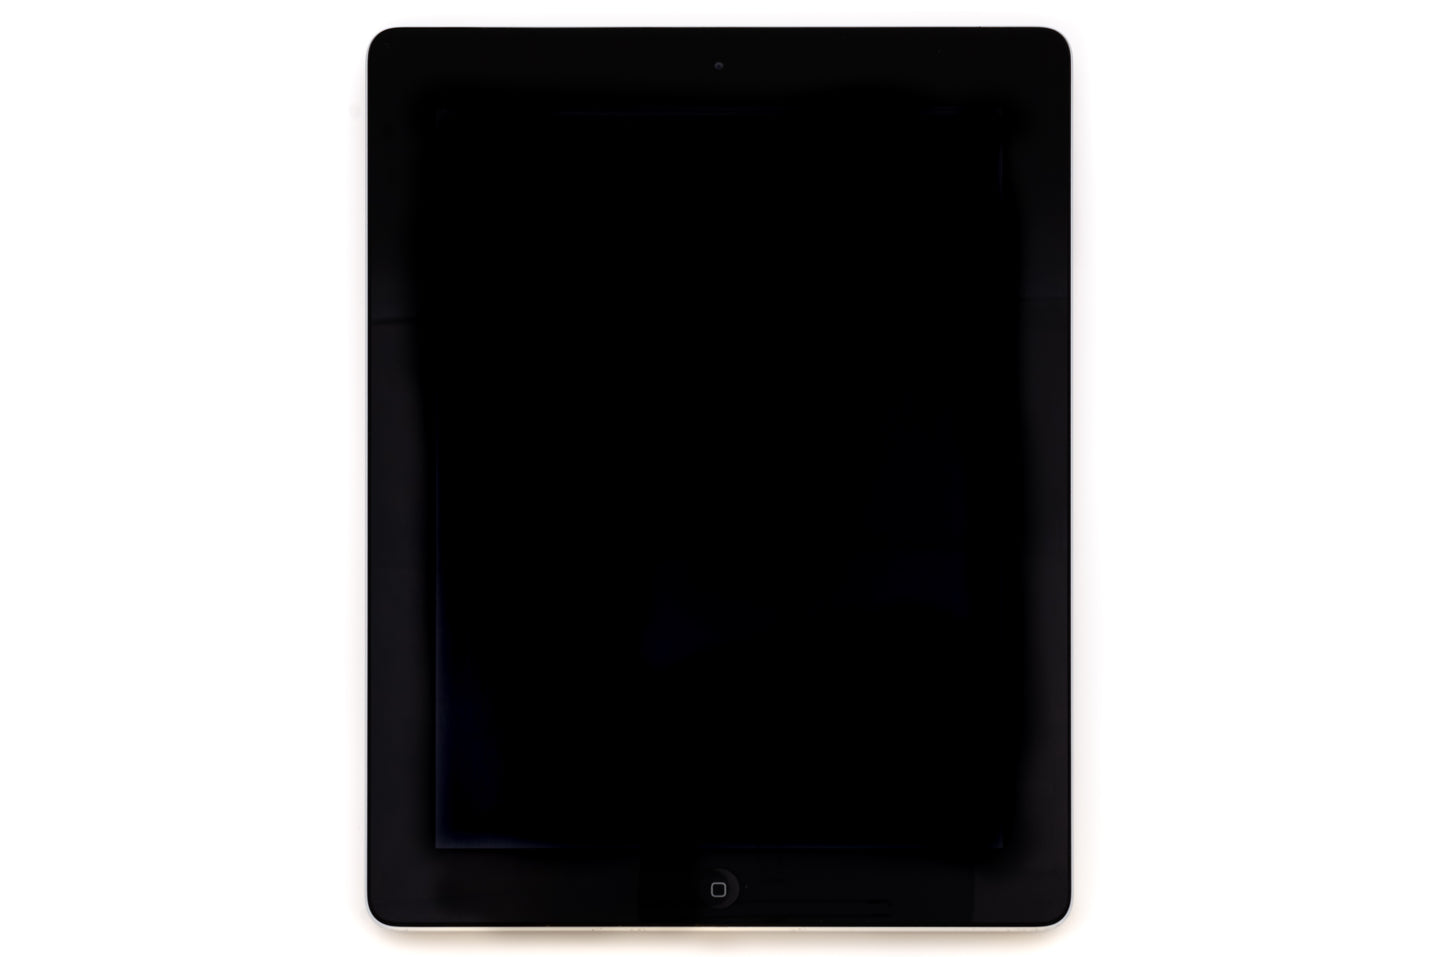 apple-2012-9.7-inch-ipad-4-a1460-silver/black-2